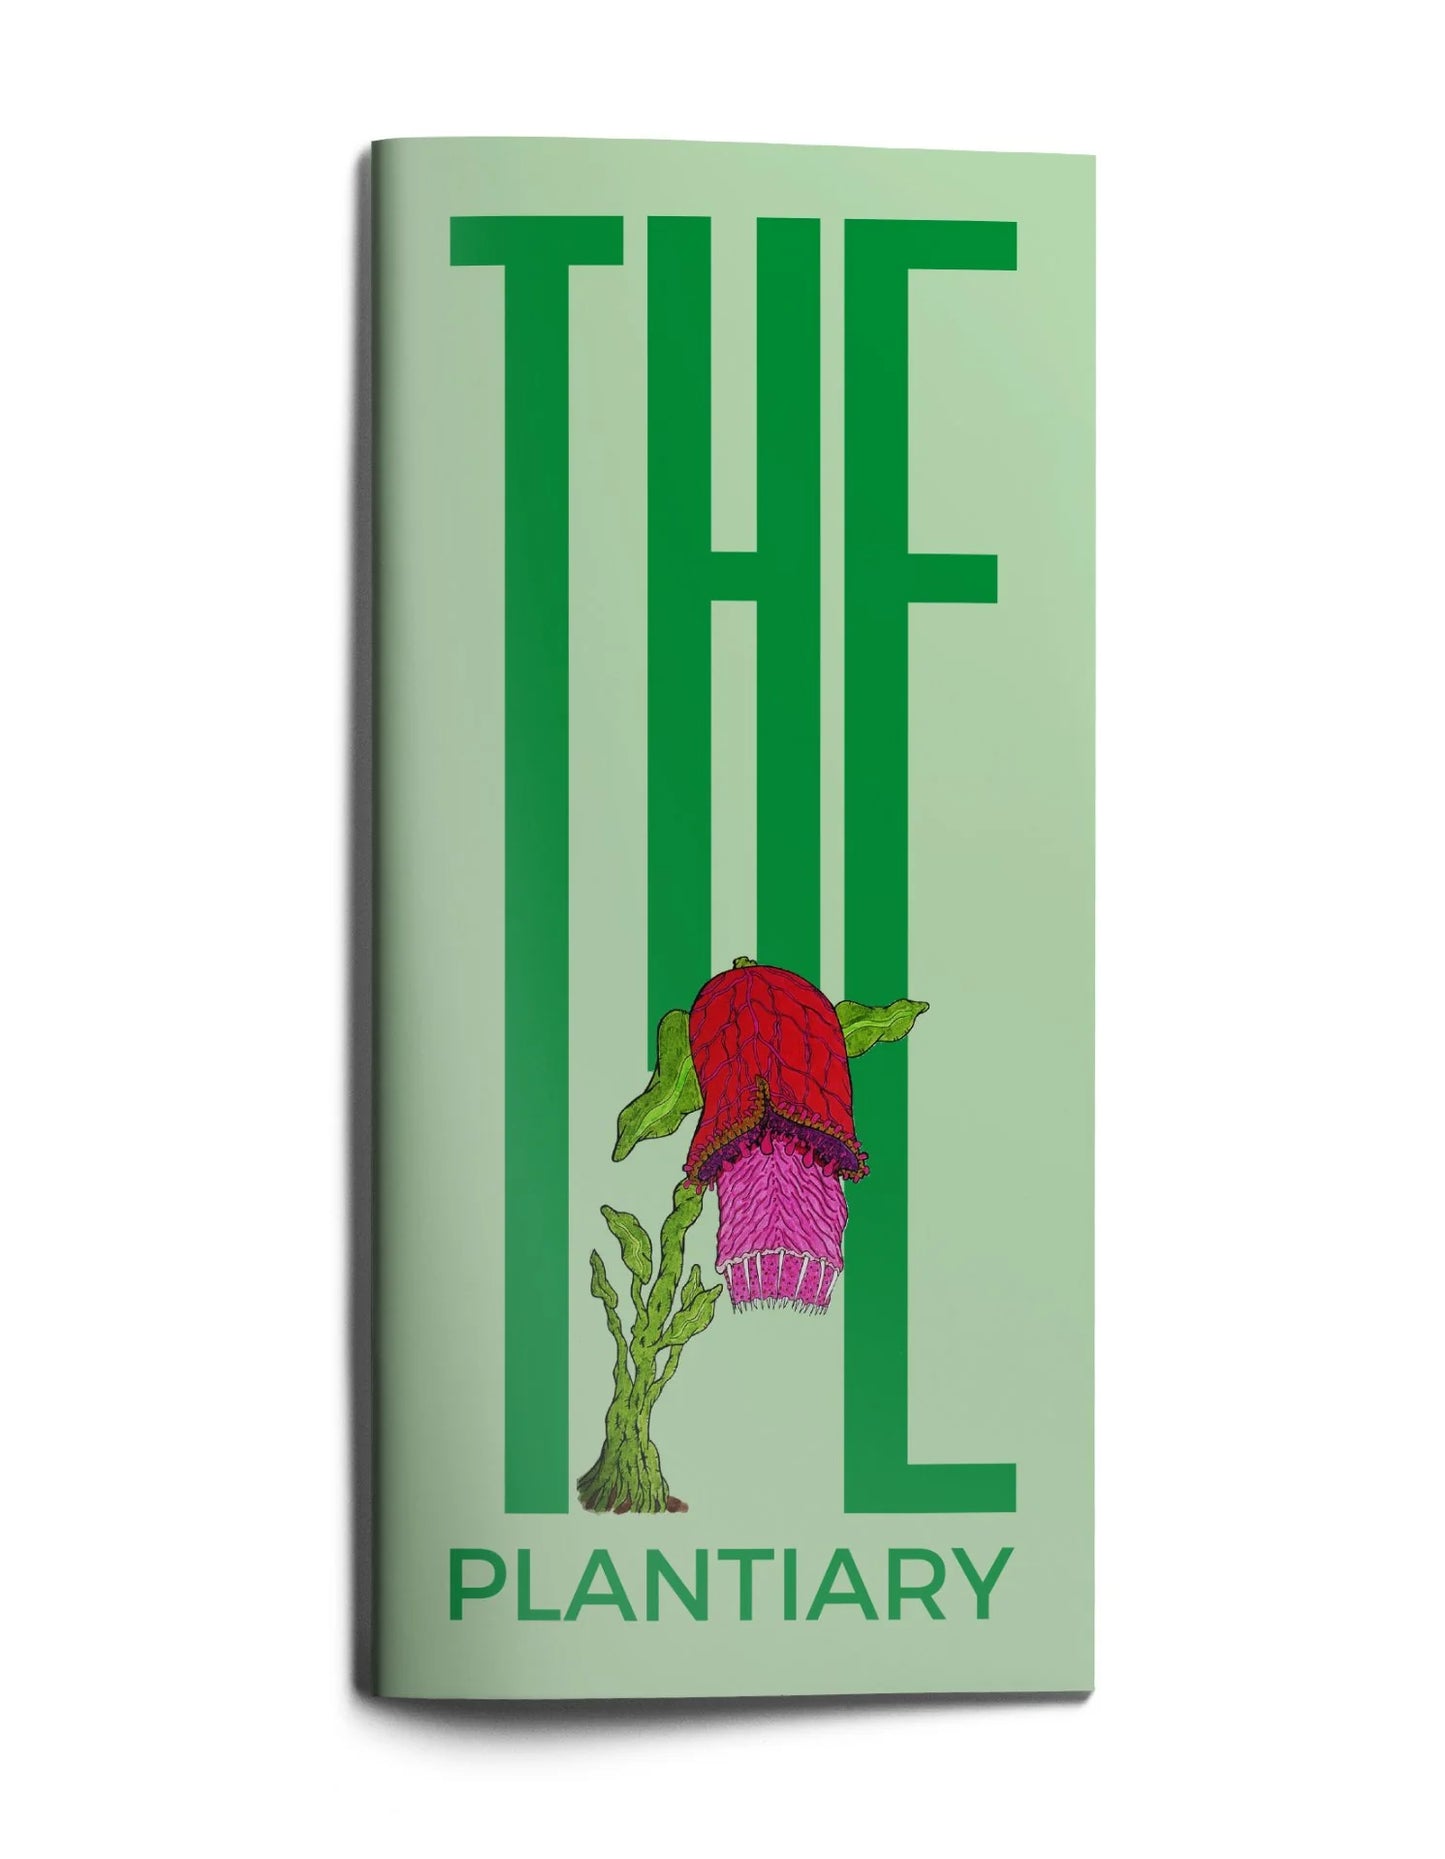 Plantiary